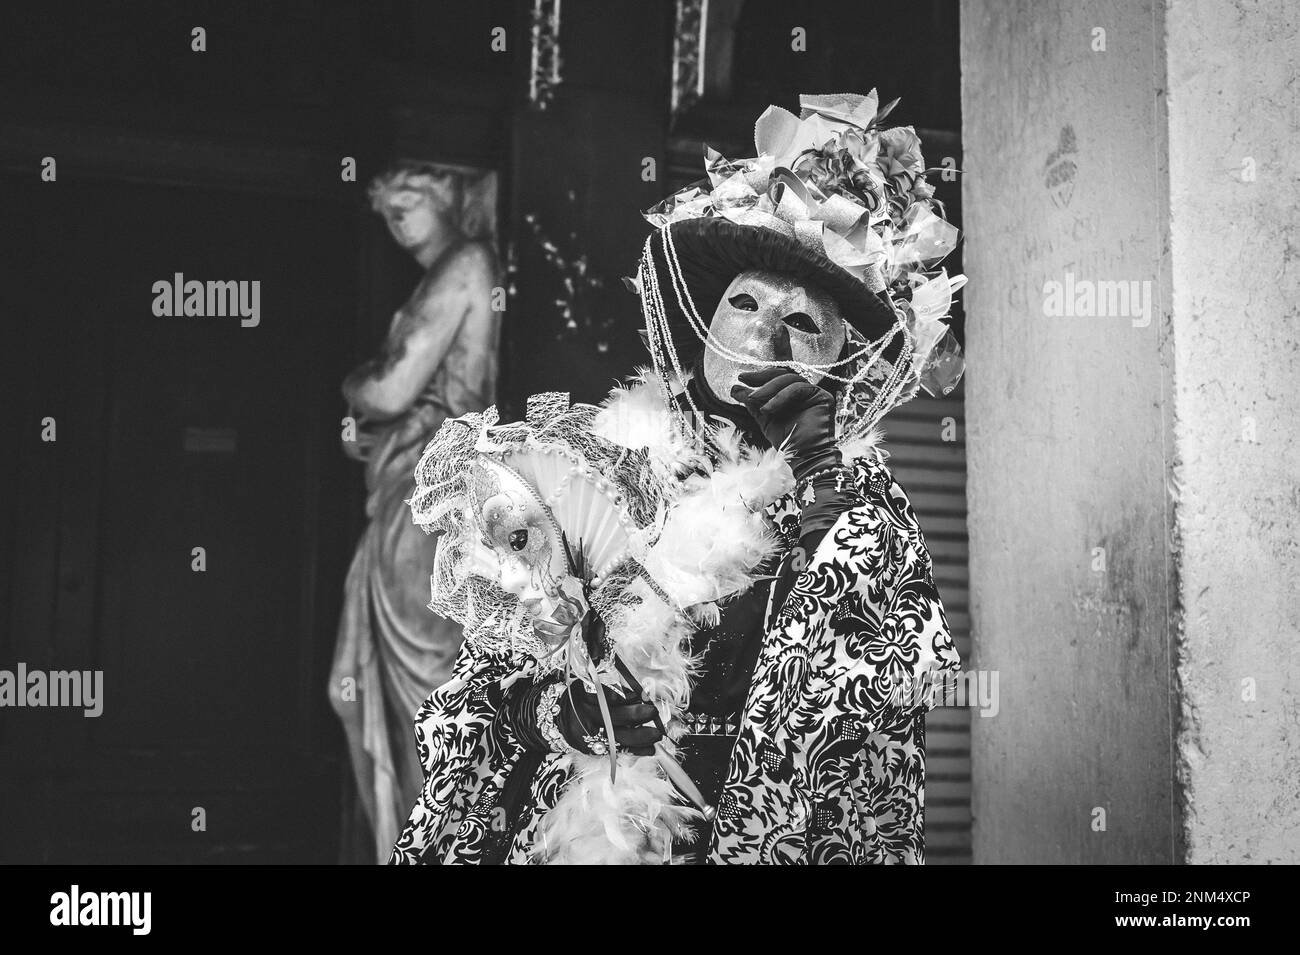 Portrait noir et blanc d'une femme masquée de carnaval à Venise sous une arche Banque D'Images